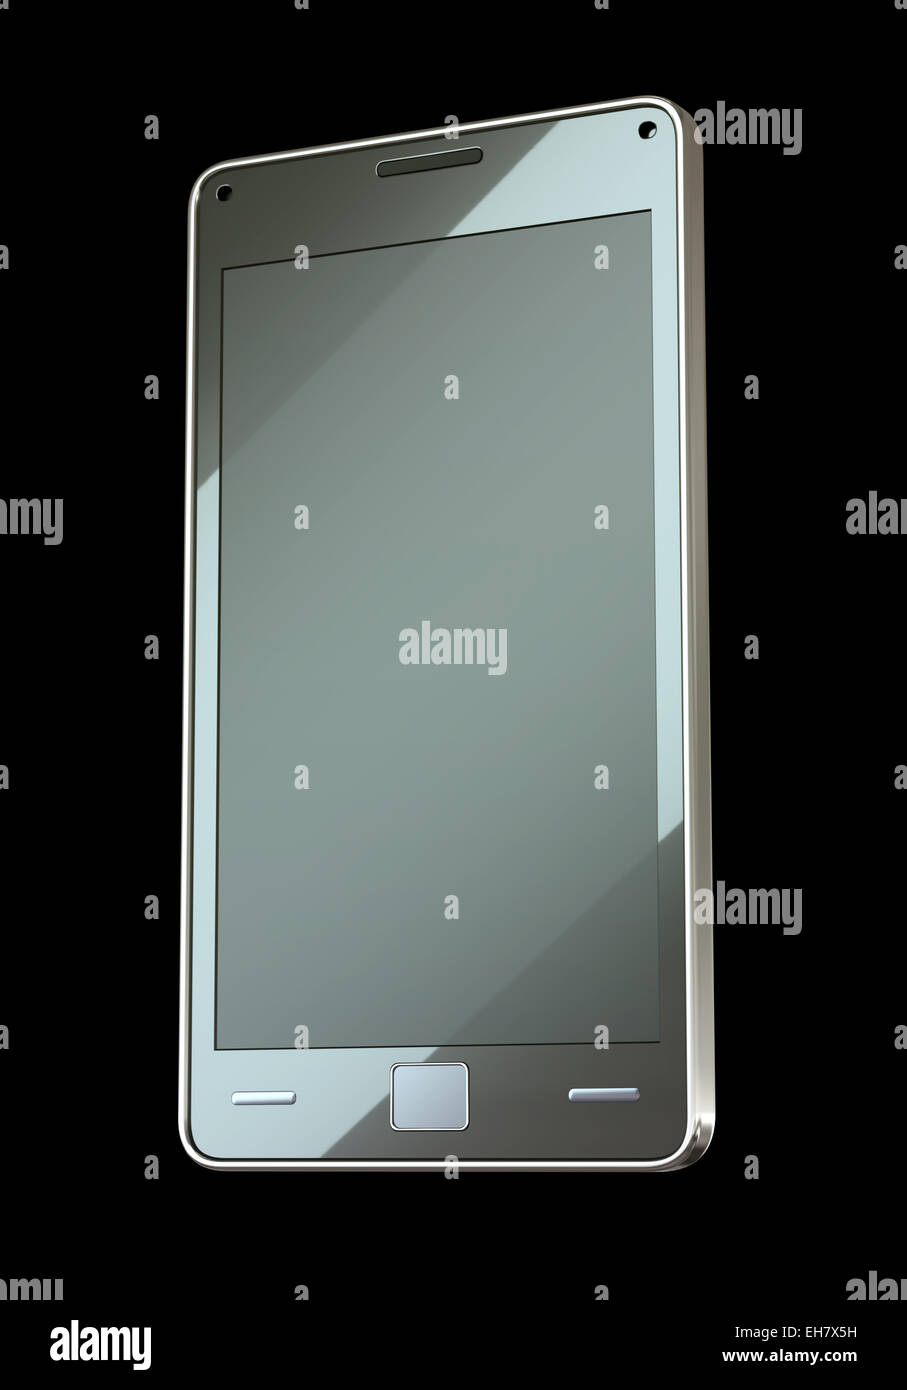 Vista frontal del teléfono inteligente con pantalla táctil (personalizado creado y prestados) Foto de stock